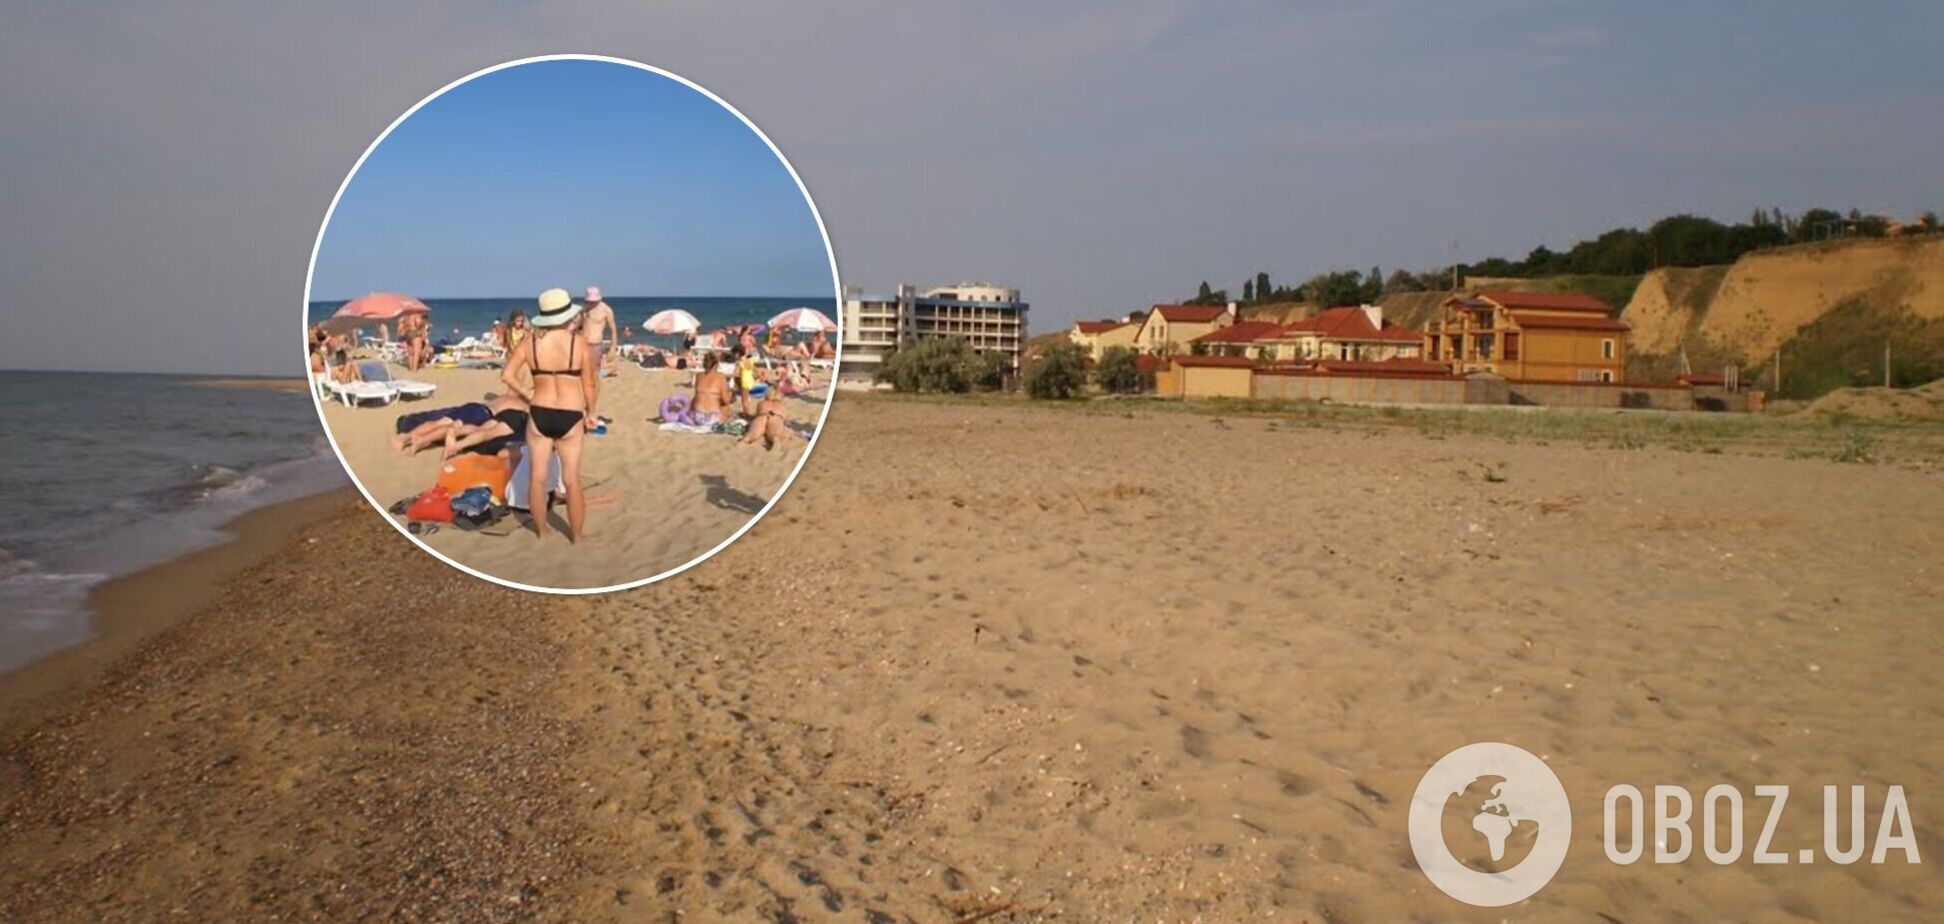 Брудне море і багато водоростей: туристку розчарував відпочинок в Одеській області. Відео